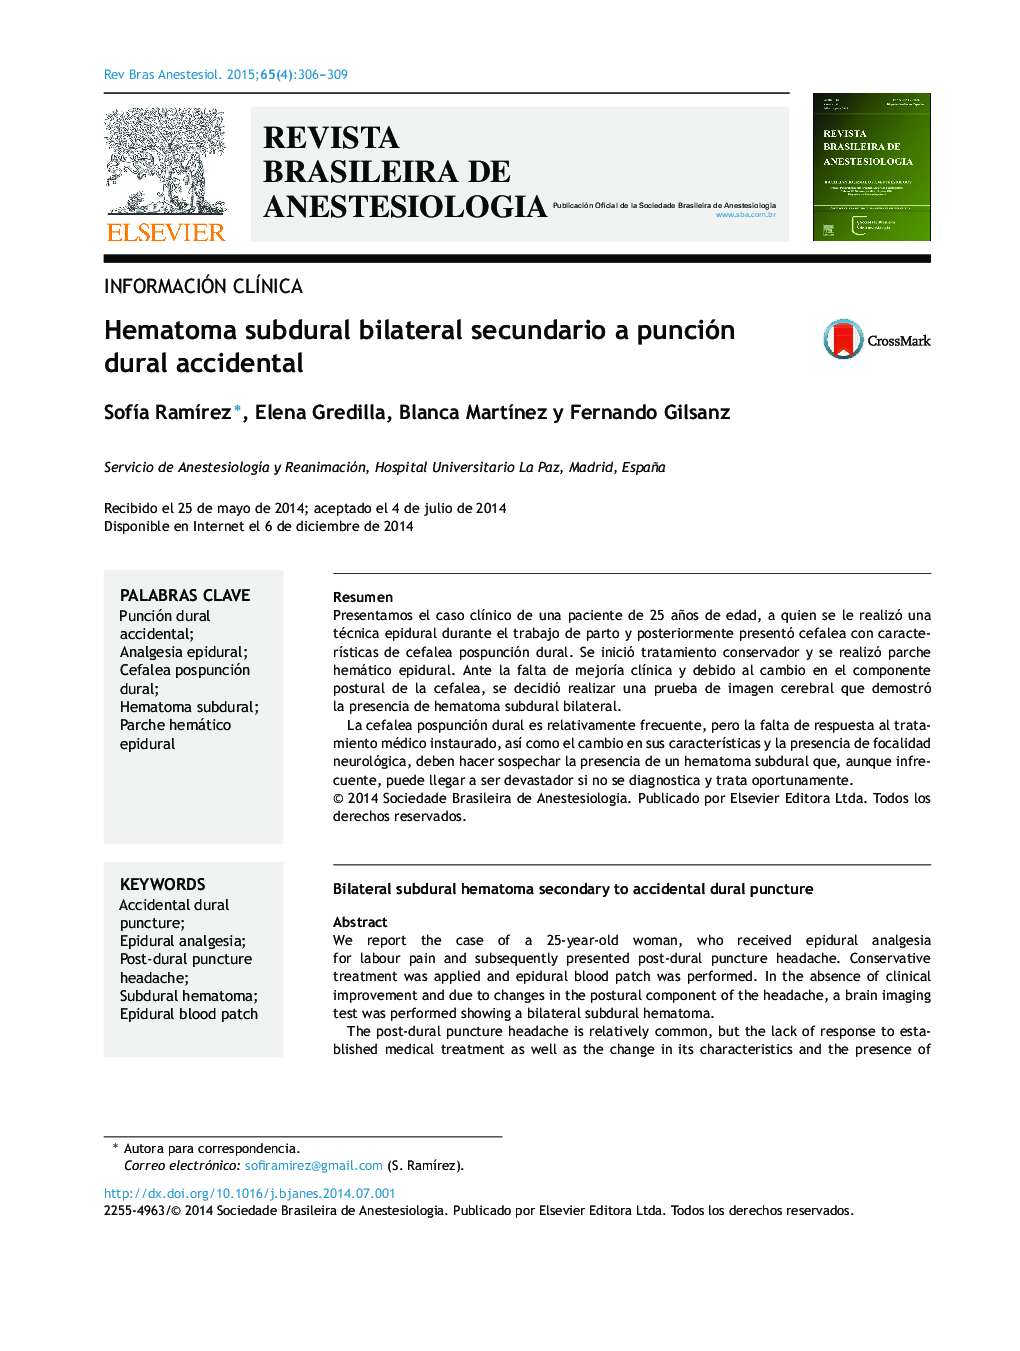 Hematoma subdural bilateral secundario a punción dural accidental